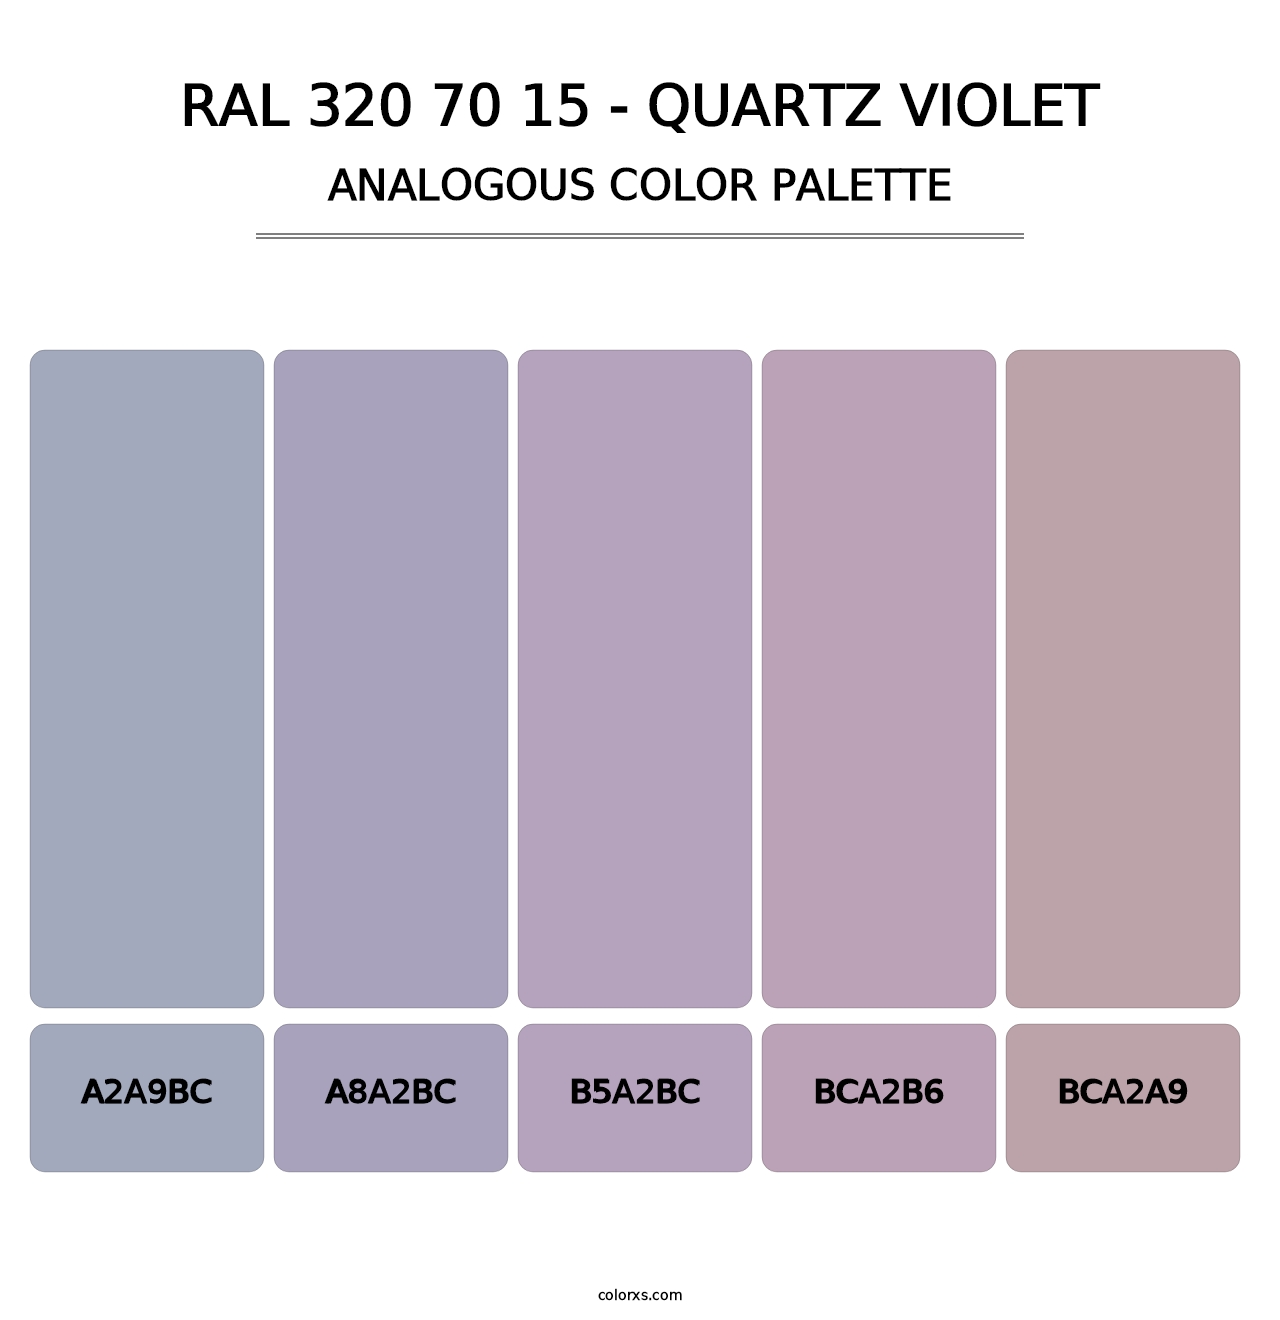 RAL 320 70 15 - Quartz Violet - Analogous Color Palette